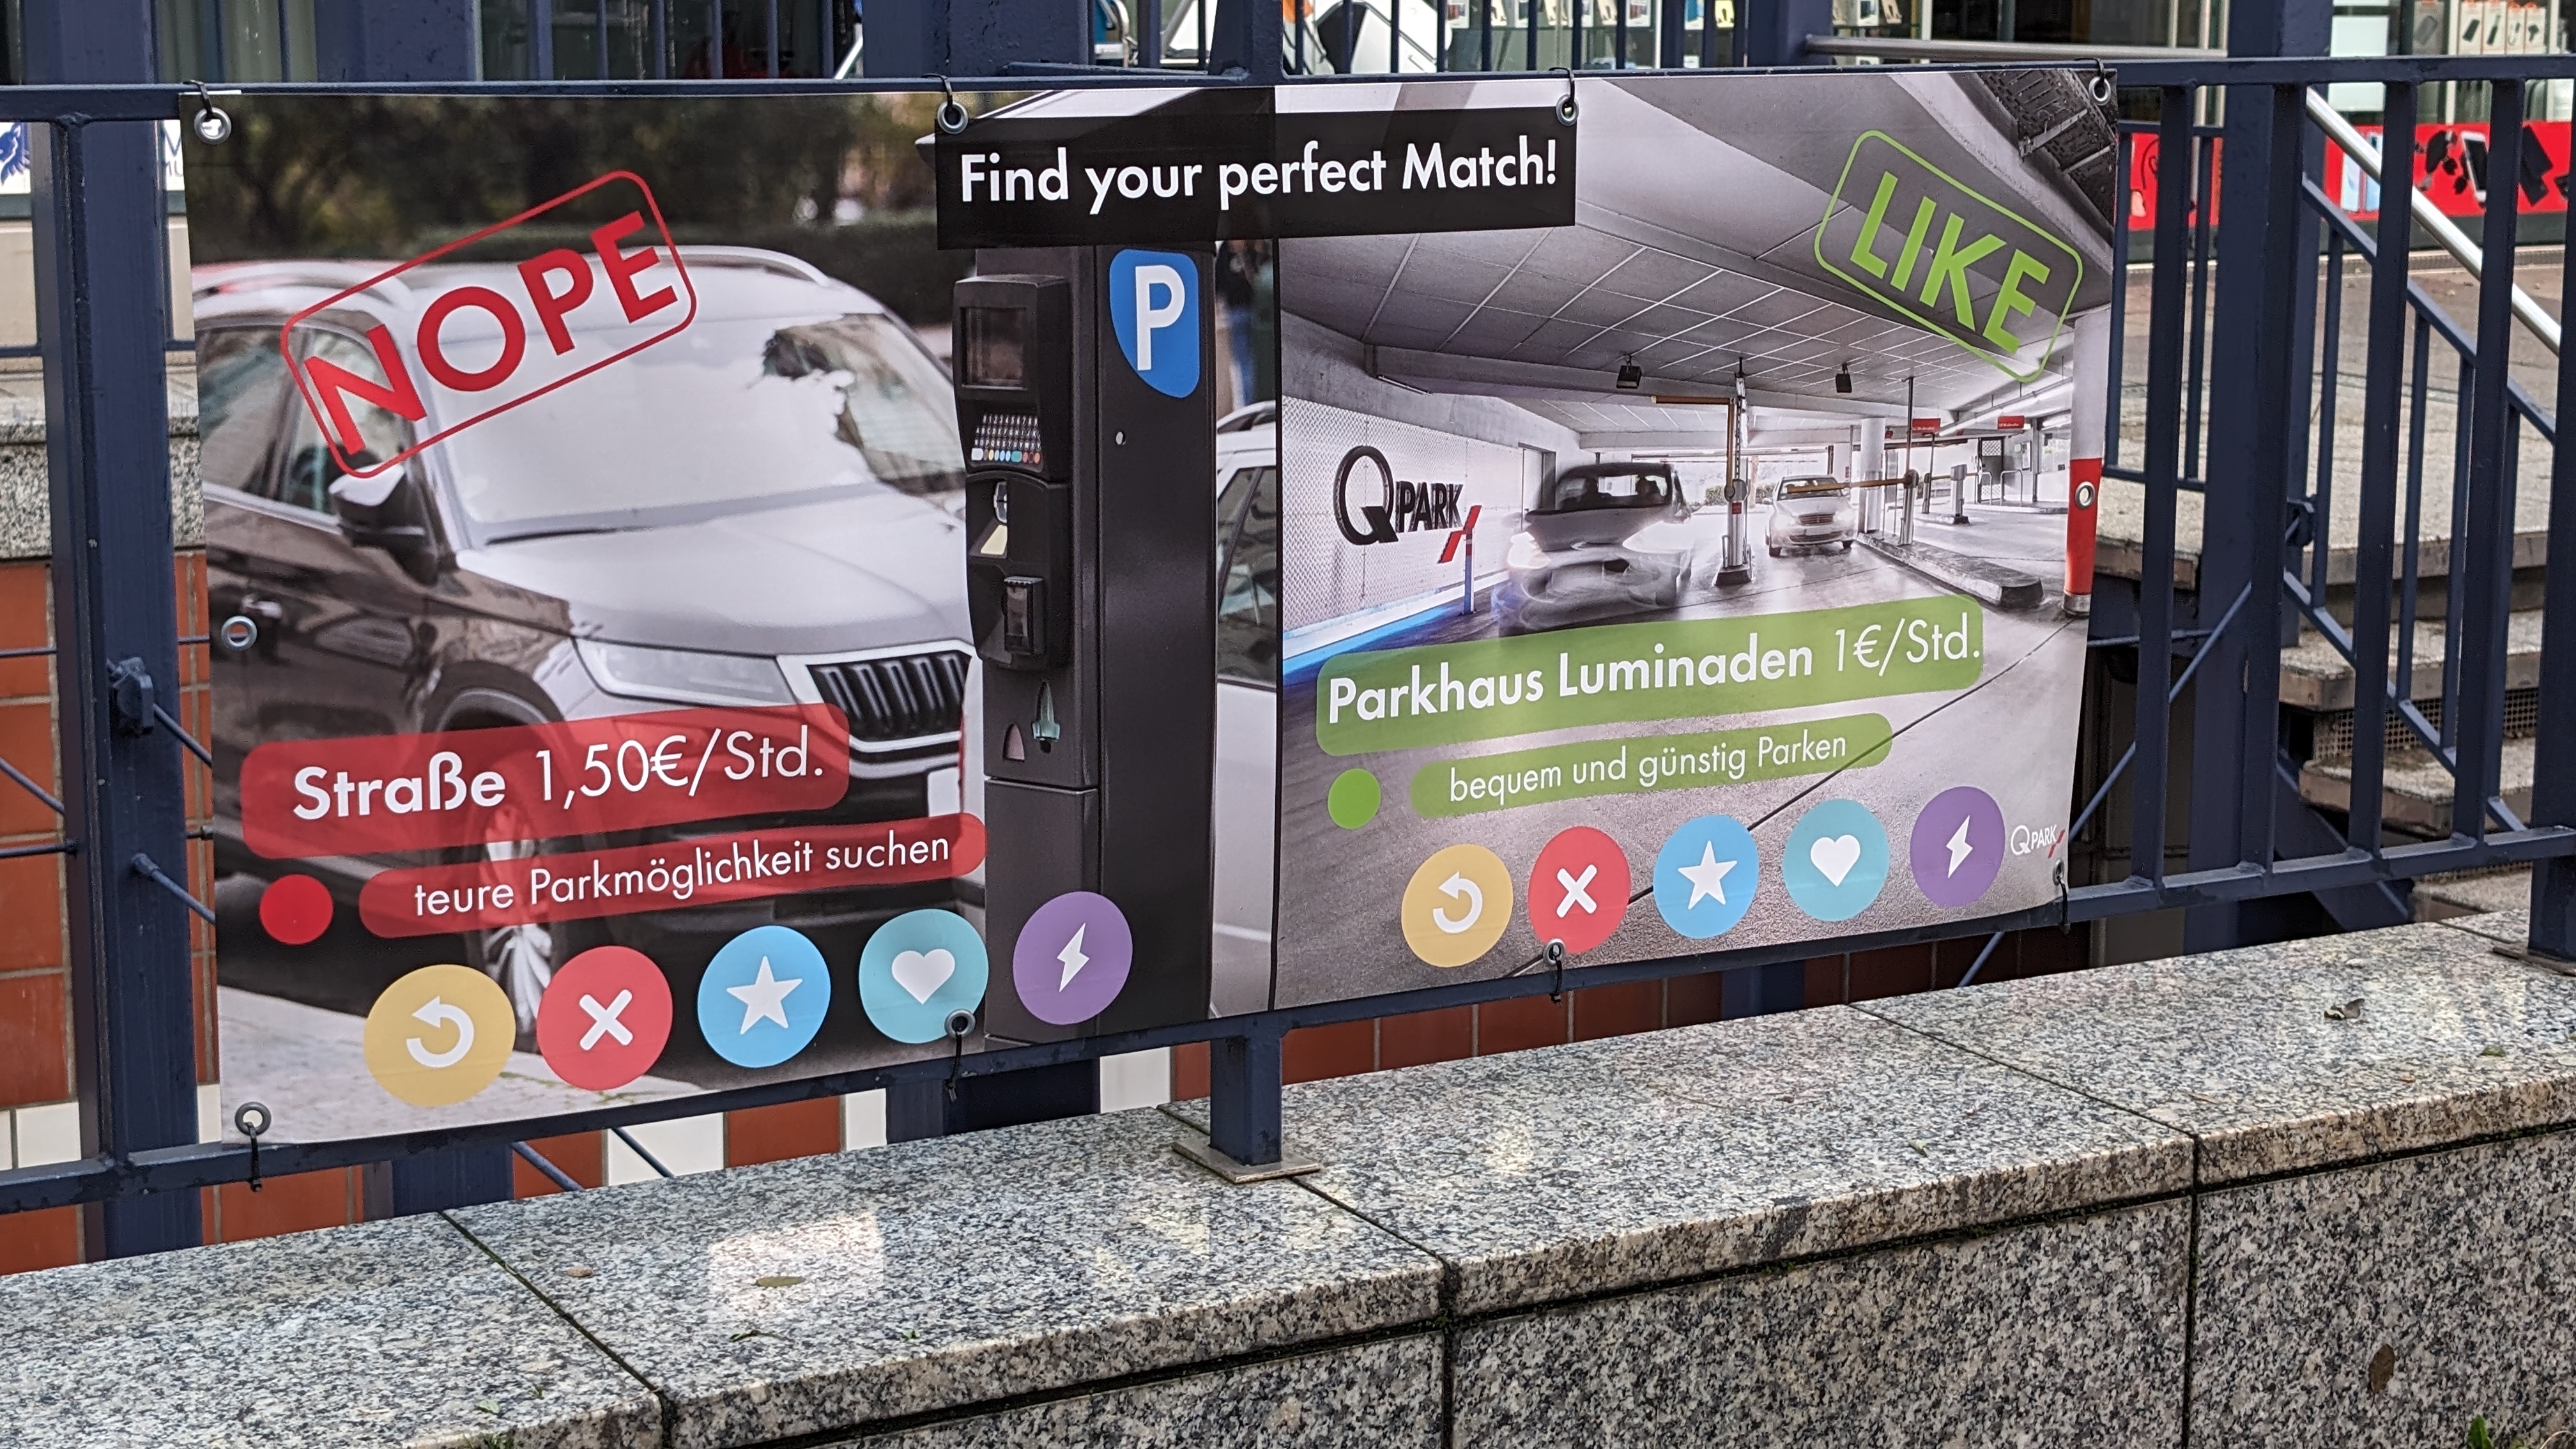 Ein Werbeschild, dass dafür wirbt, dass das Parken in den Luminaden 1 € pro Stunde kostet